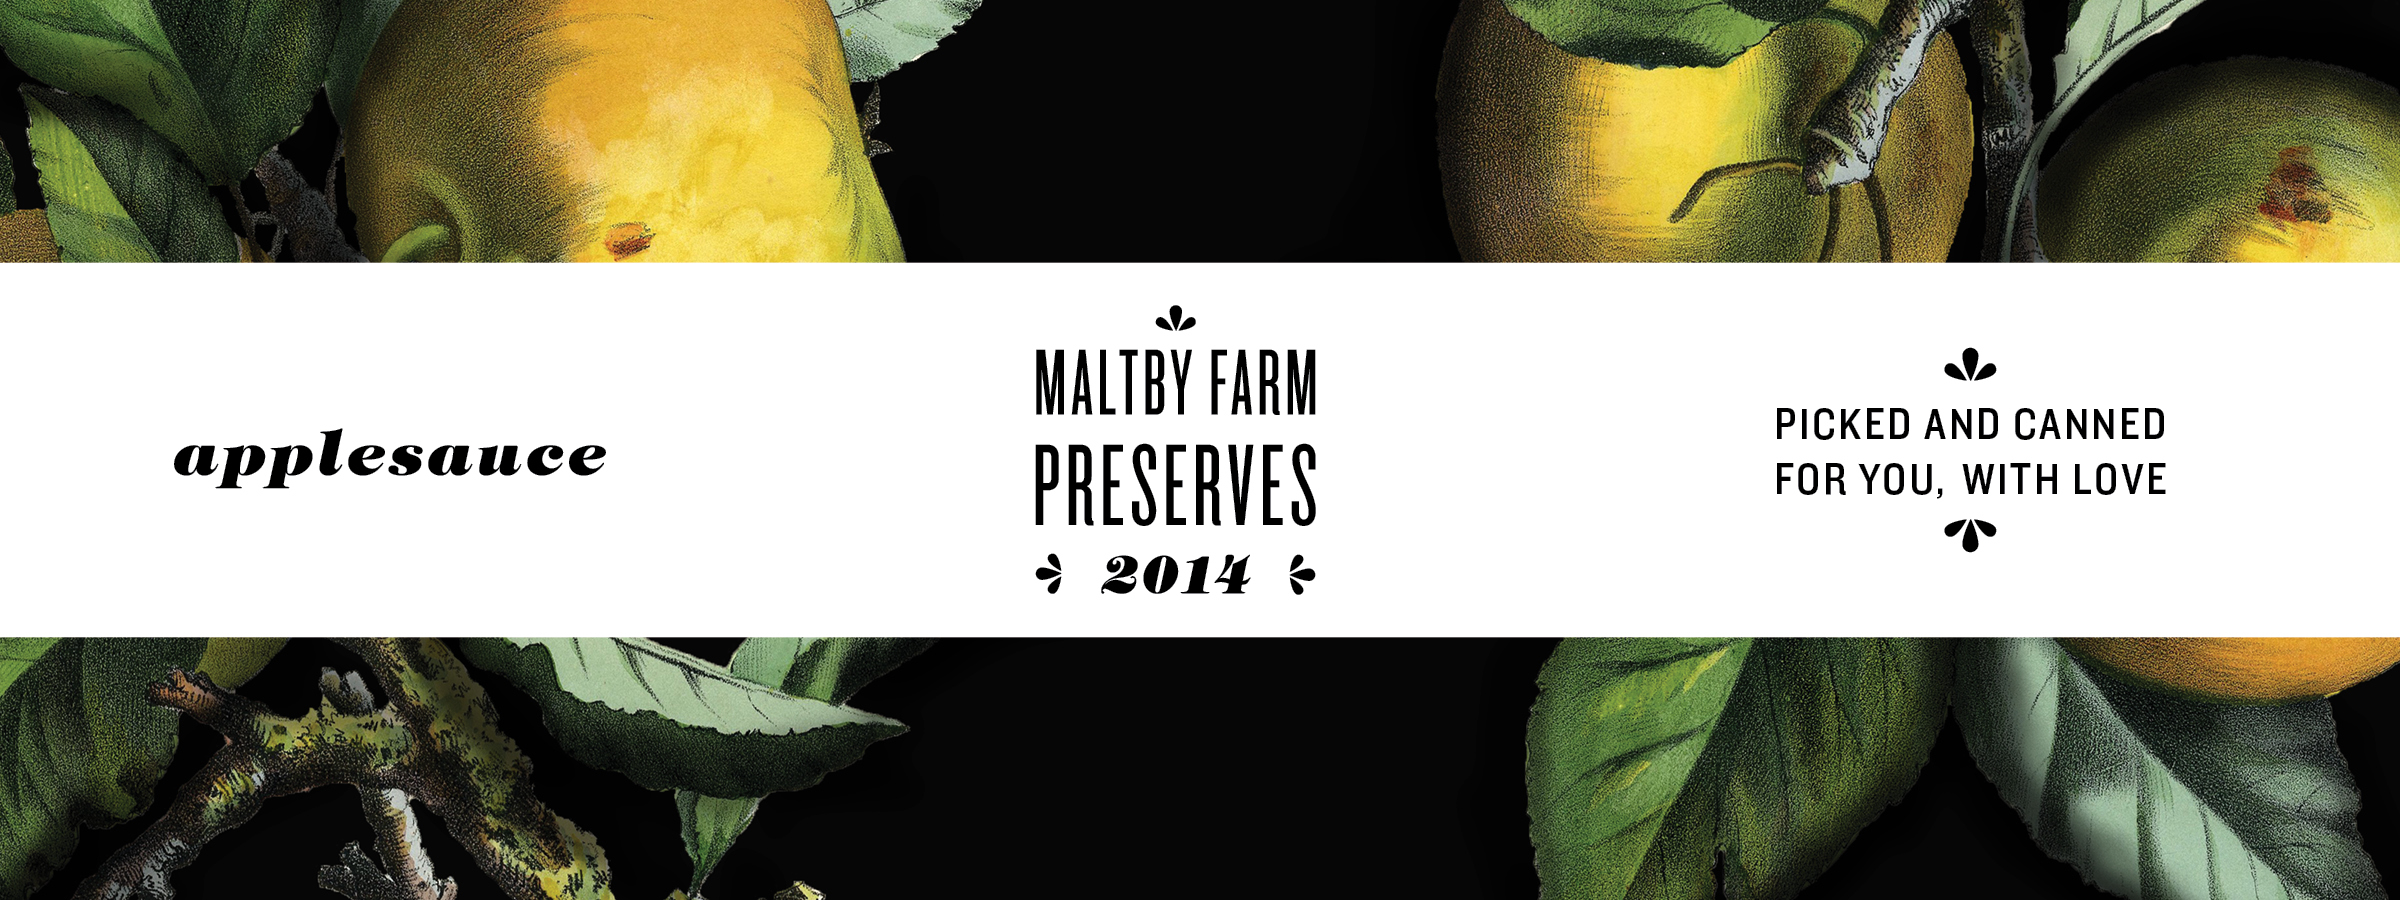 maltbyfarm-labels5.jpg